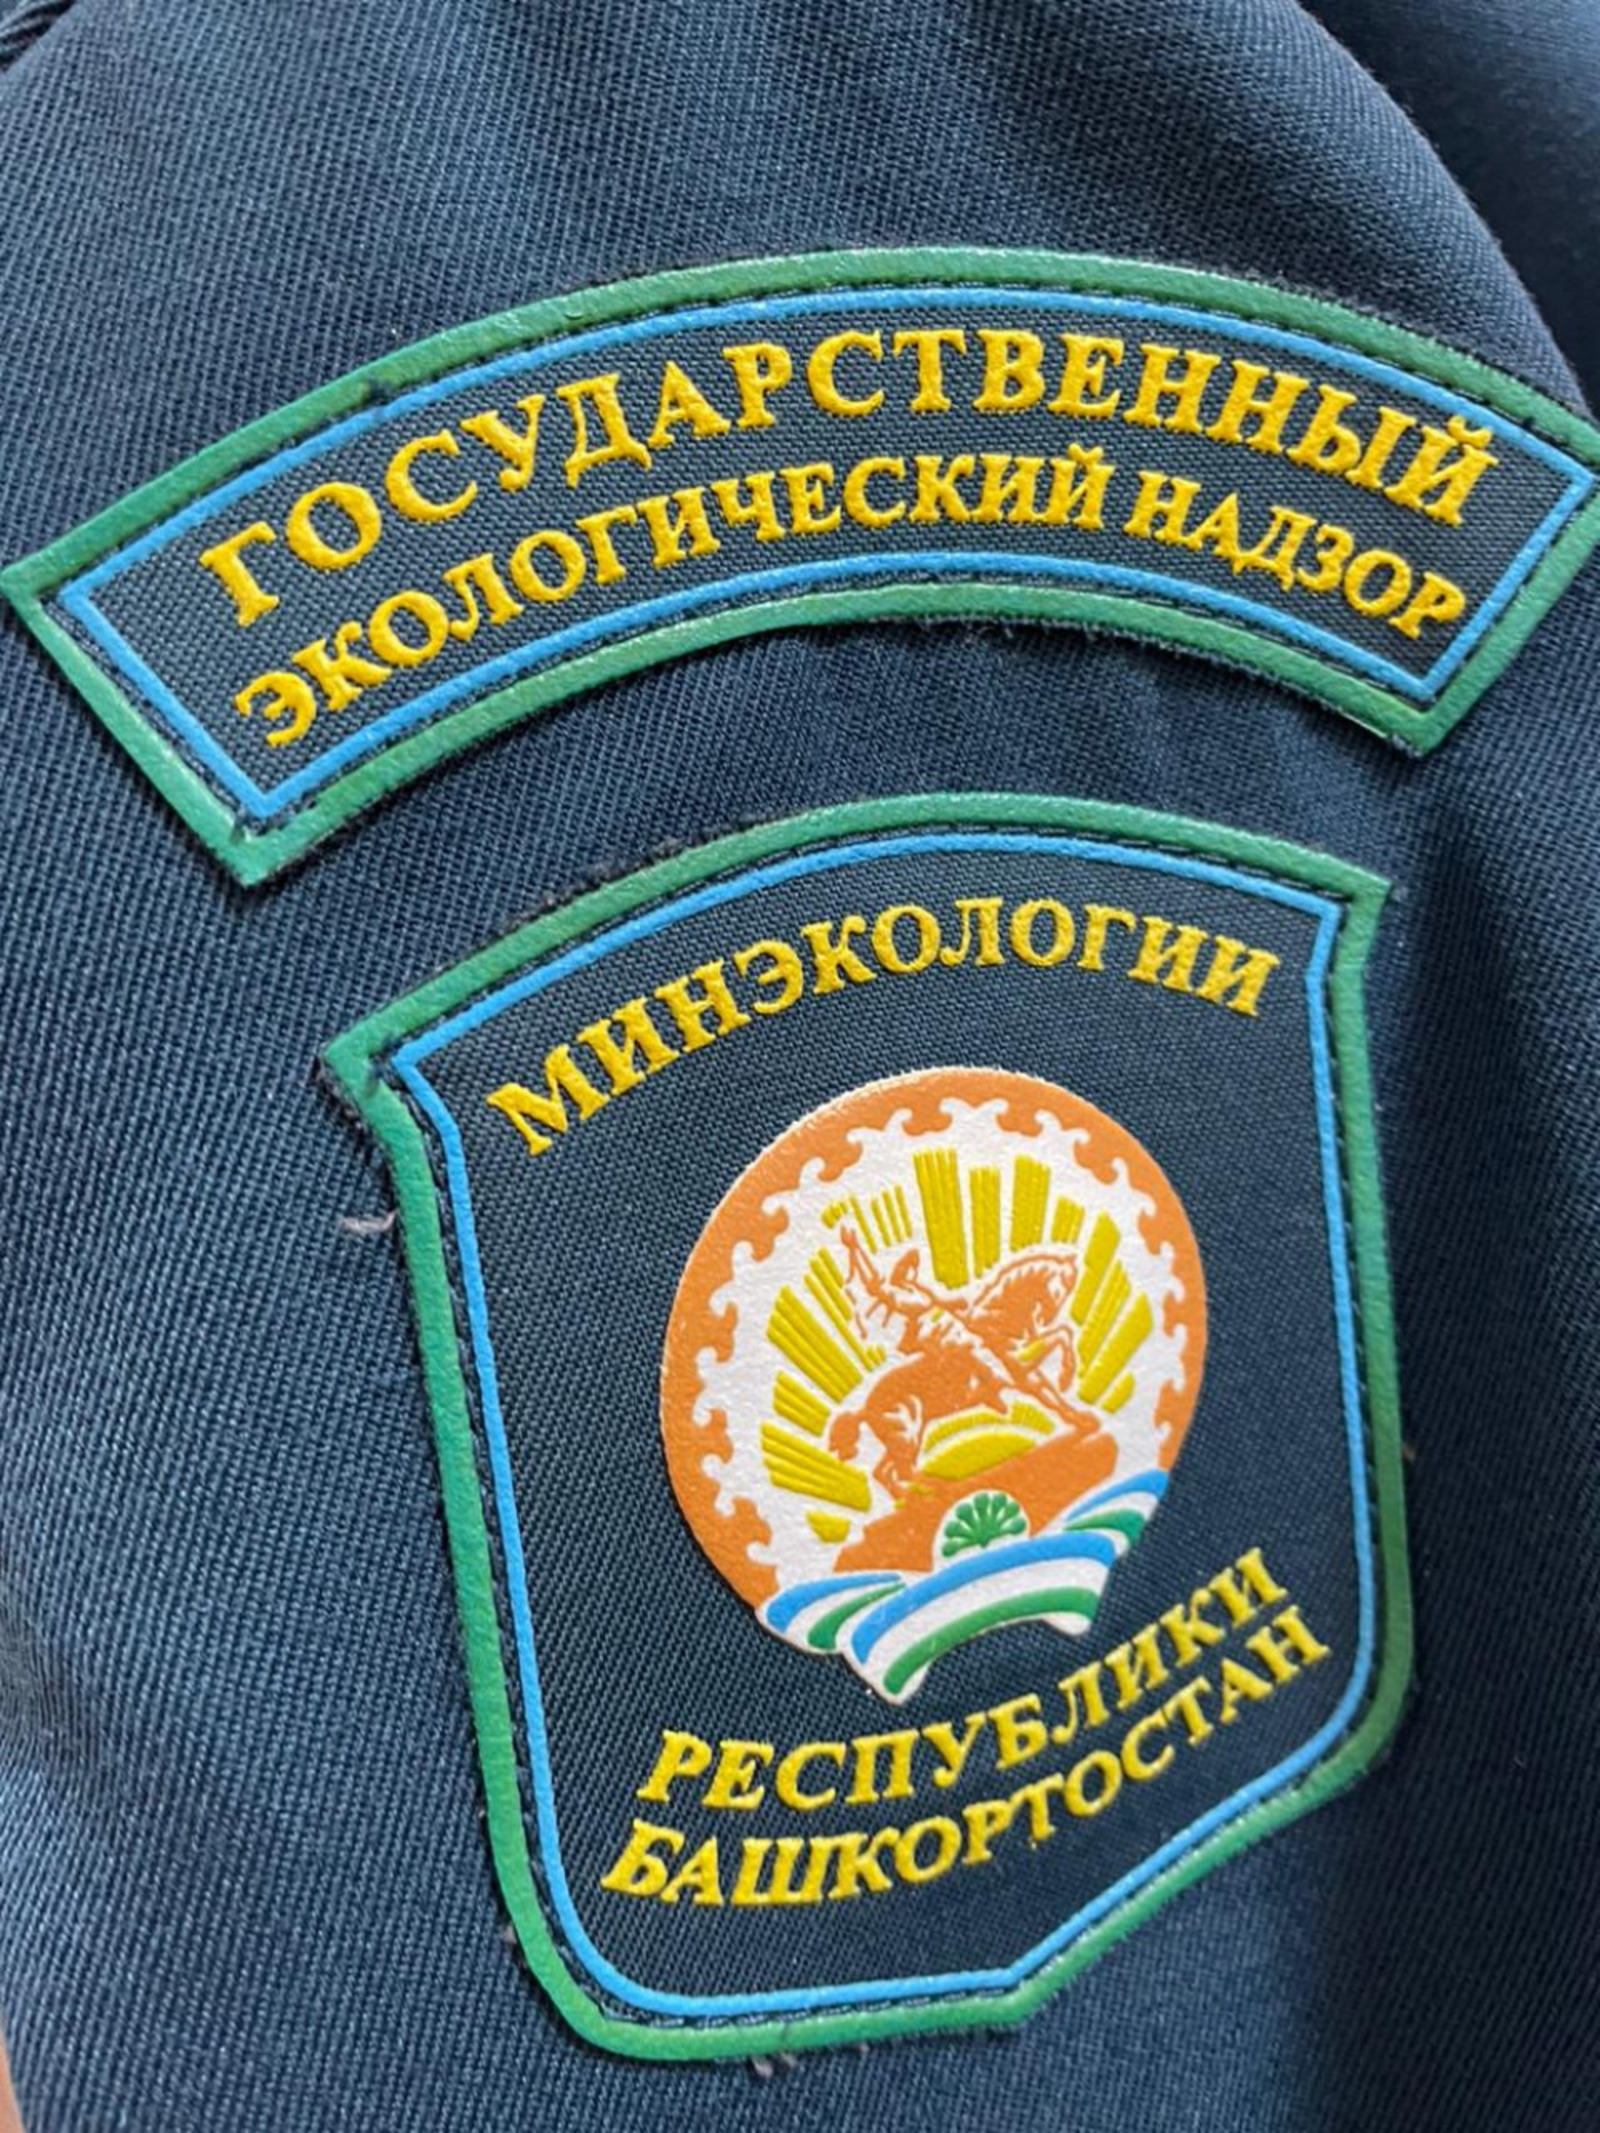 В Башкортостане выявлено 905 нарушений природоохранного законодательства